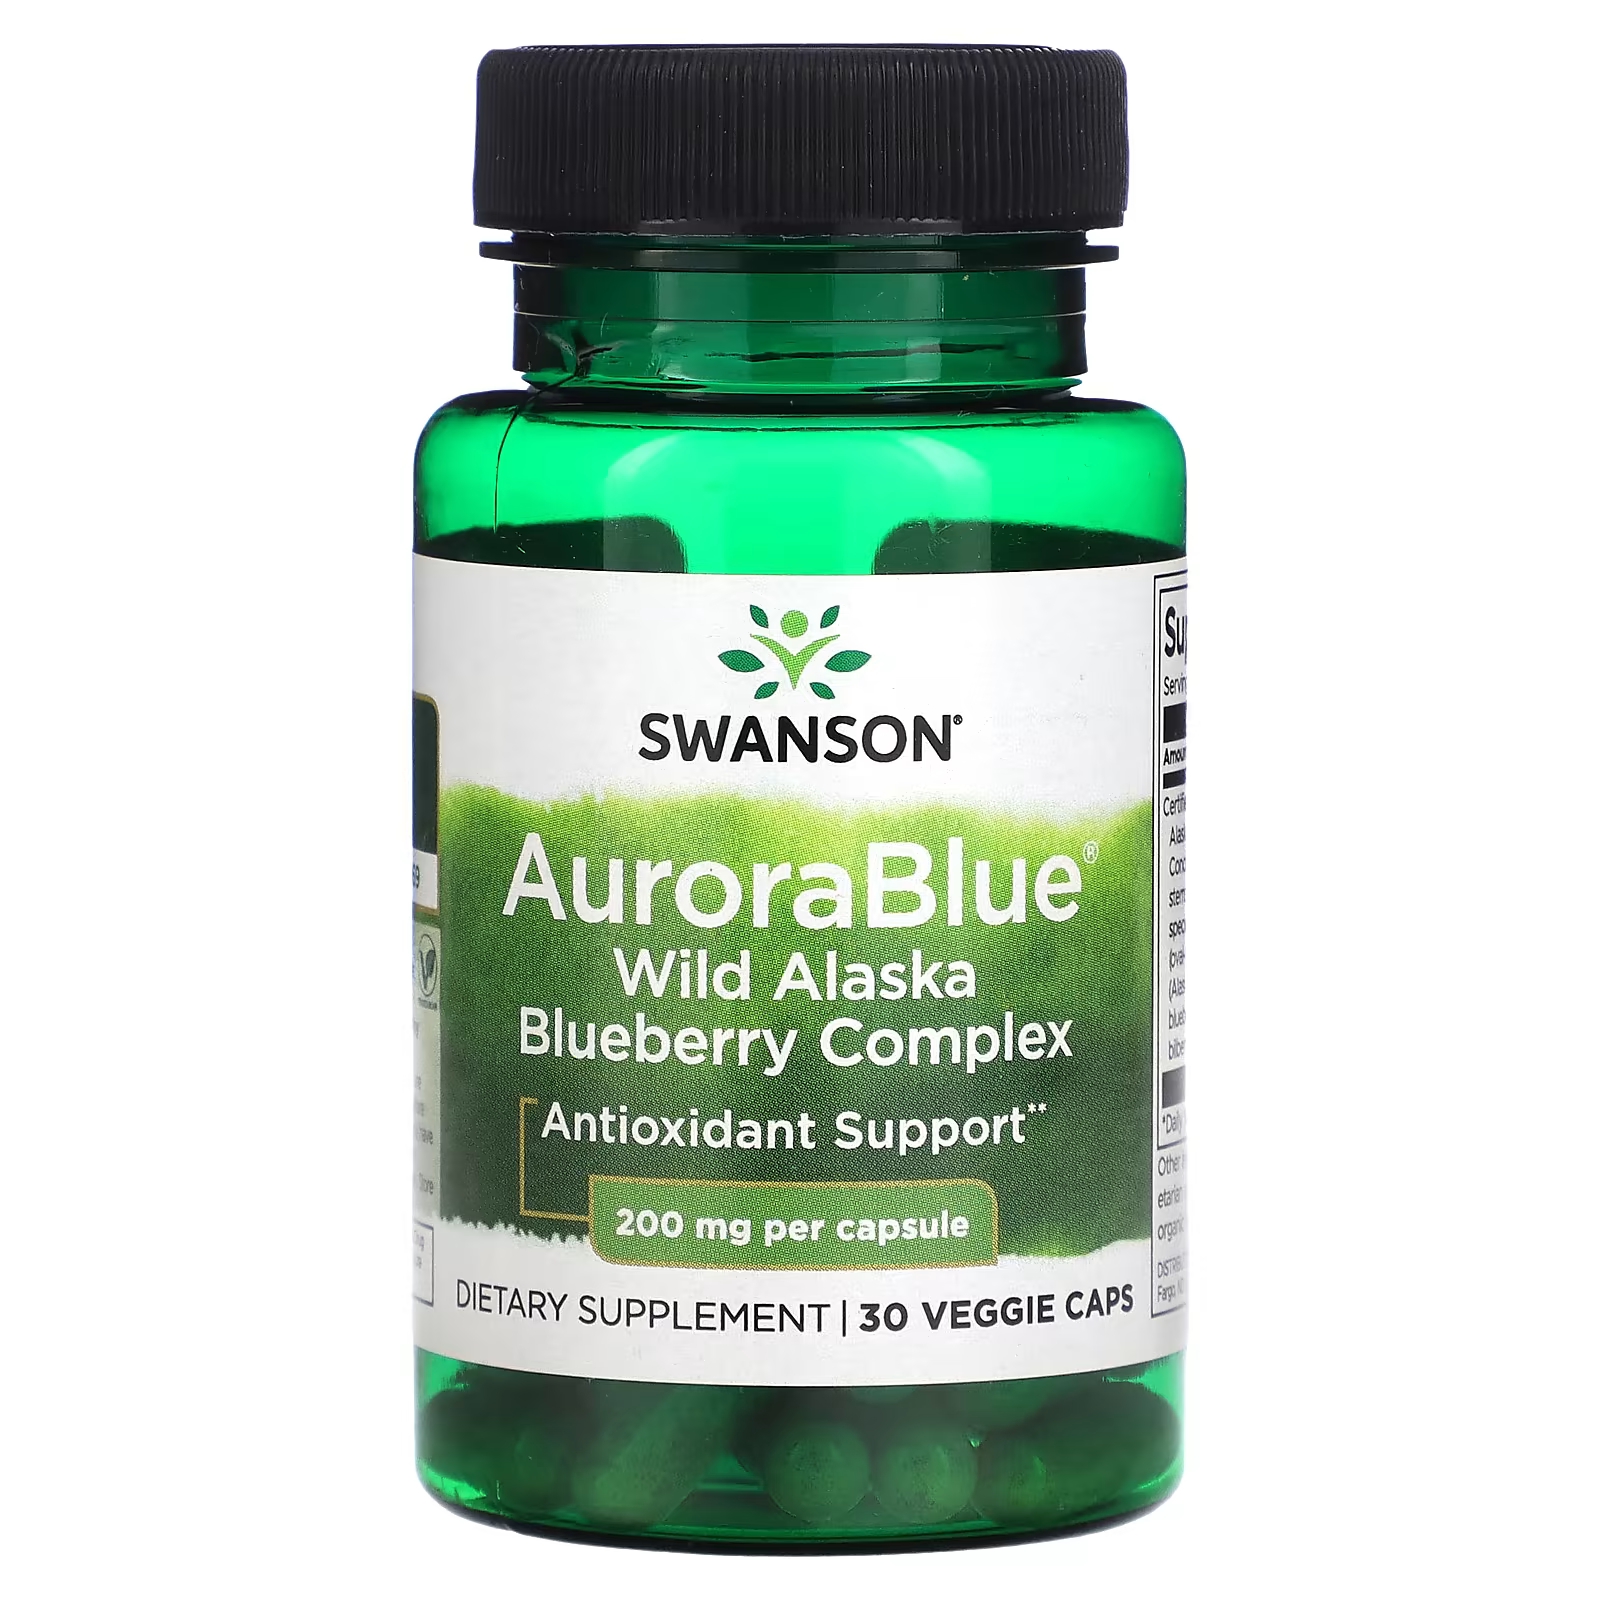 Пищевая добавка Aurora Blue Wild Alaska Blueberry Complex Swanson, 200 мг, 30 вегетарианских капсул сторк печенье pocky blueberry черника